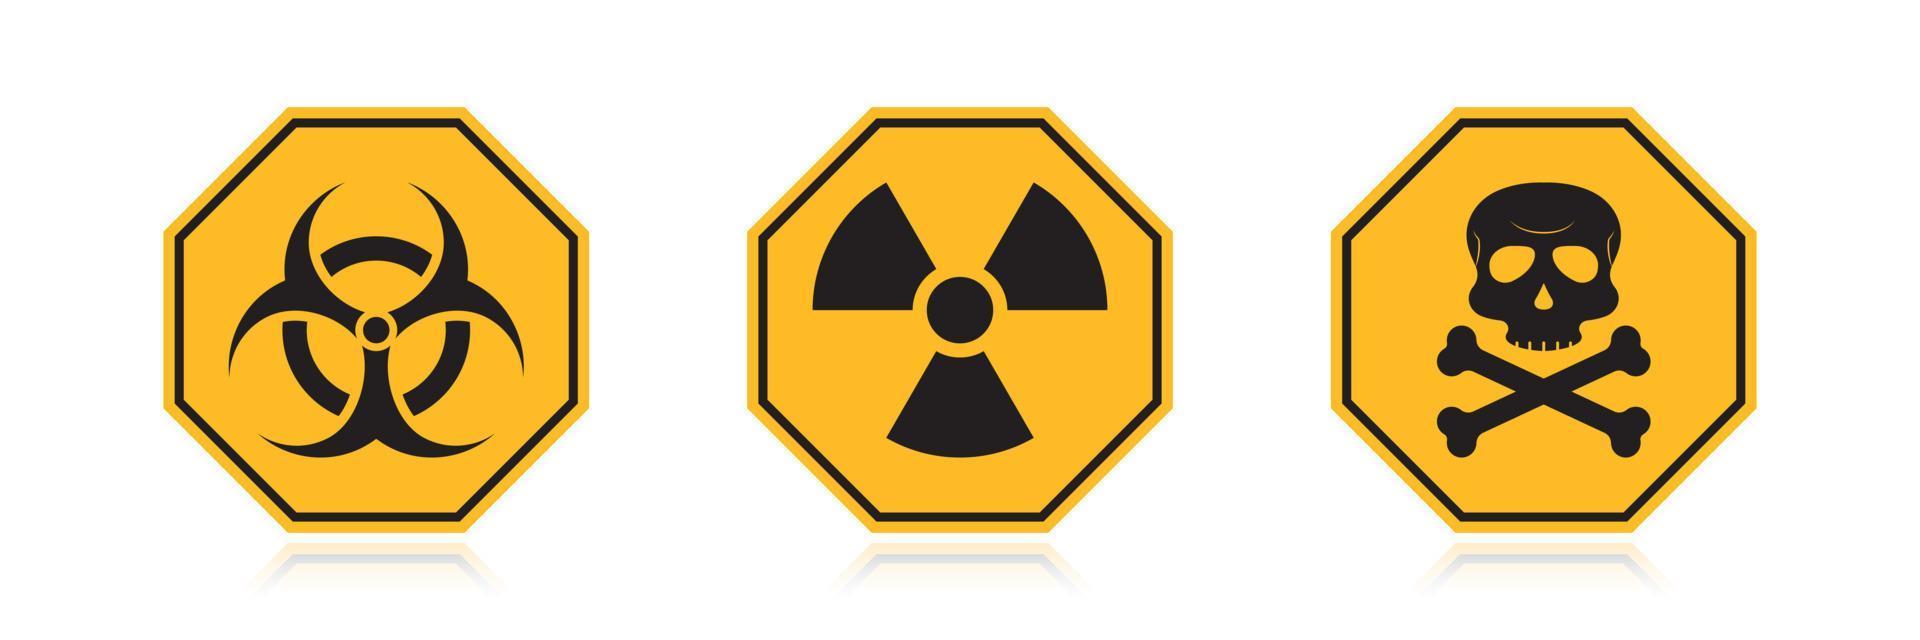 Warnung Gefahr gelbes Schild. Symbol der Strahlung. Vorsicht giftige Biogefährdung. achteckige Form des Zeichens. Vektor